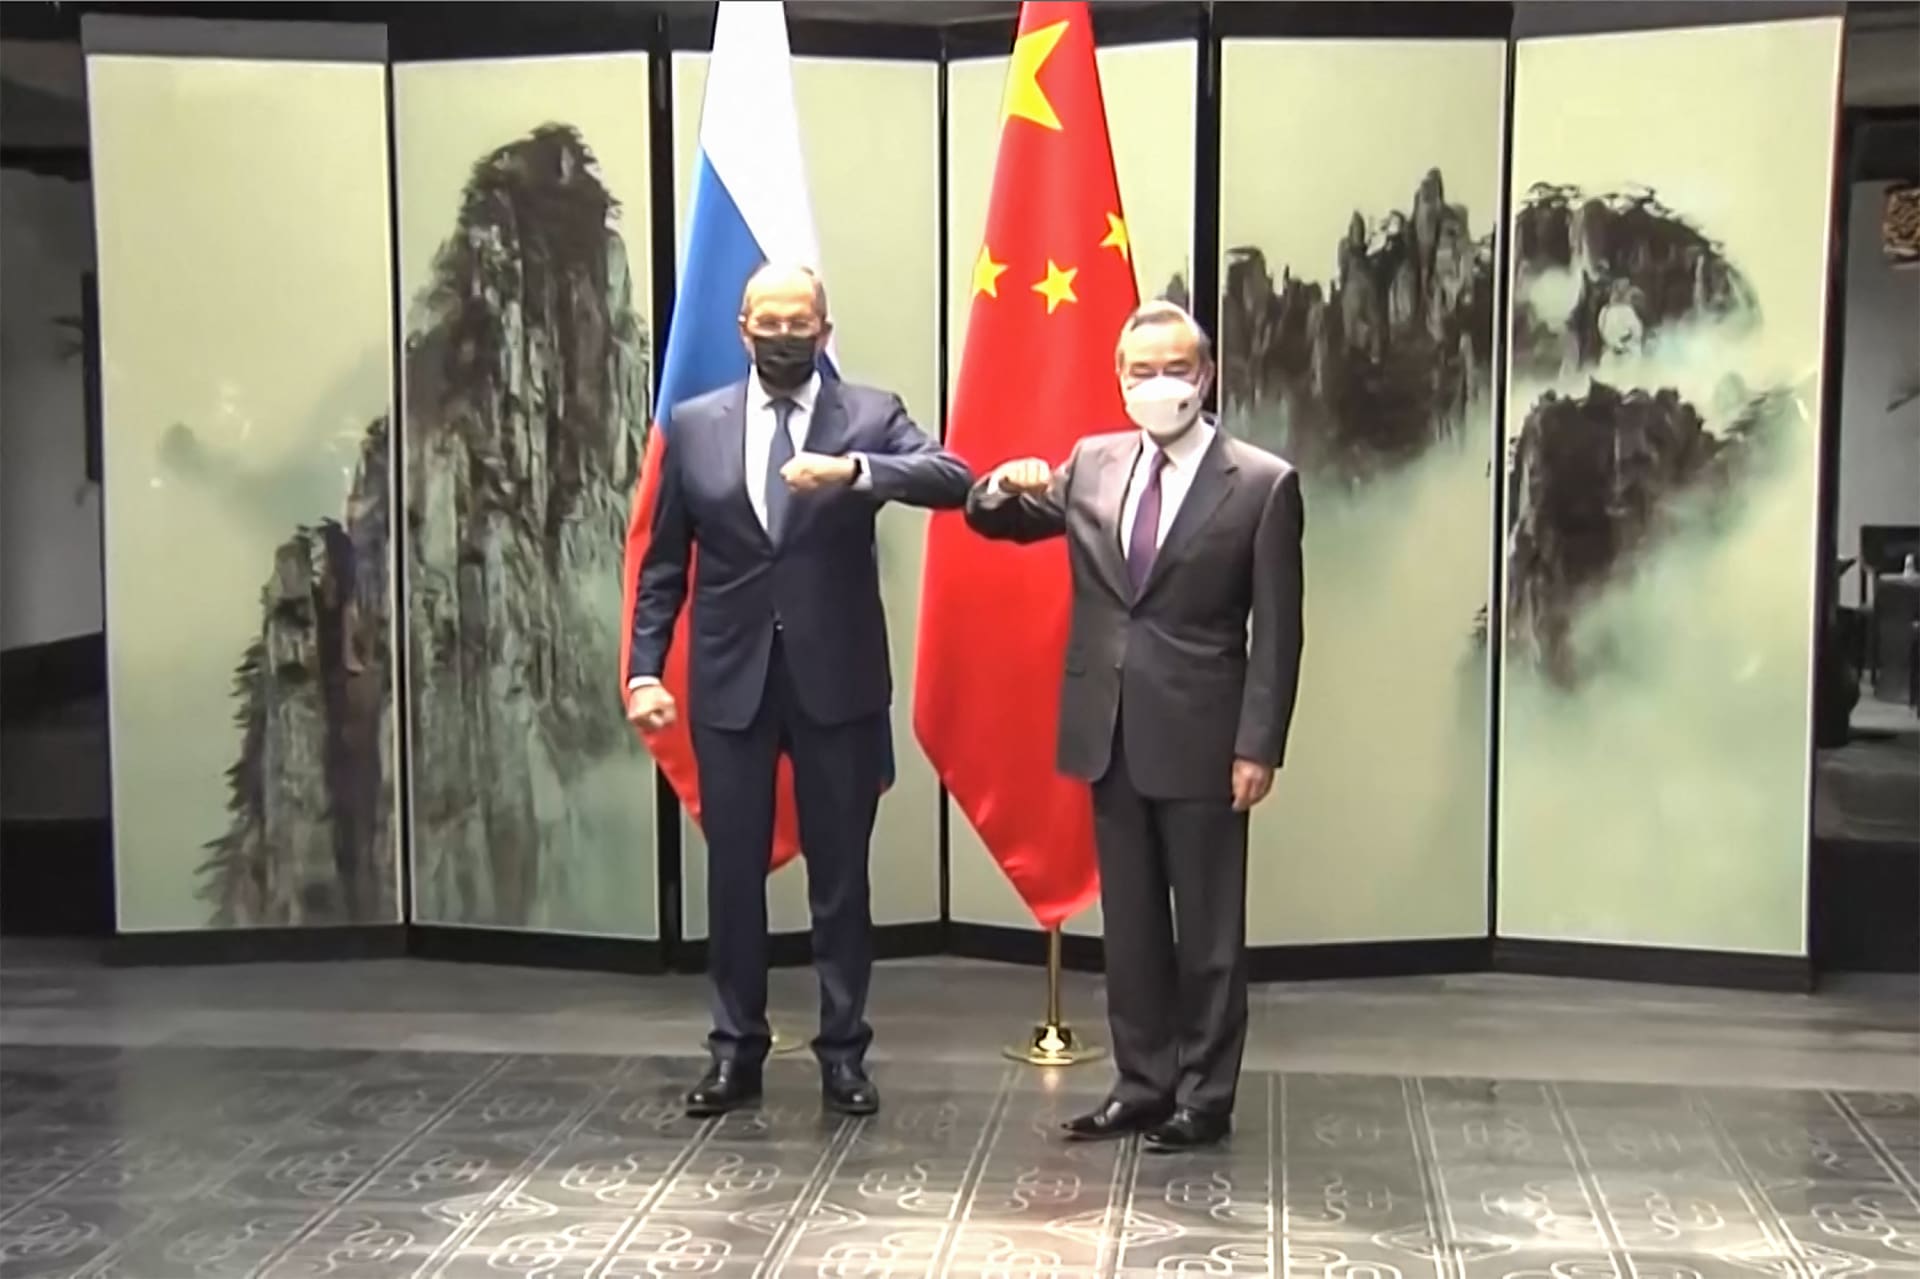 لافروف عندما رأى وزير خارجية الصين مرتديا الكمامة: "لا تقلق... أنت من الأصدقاء"